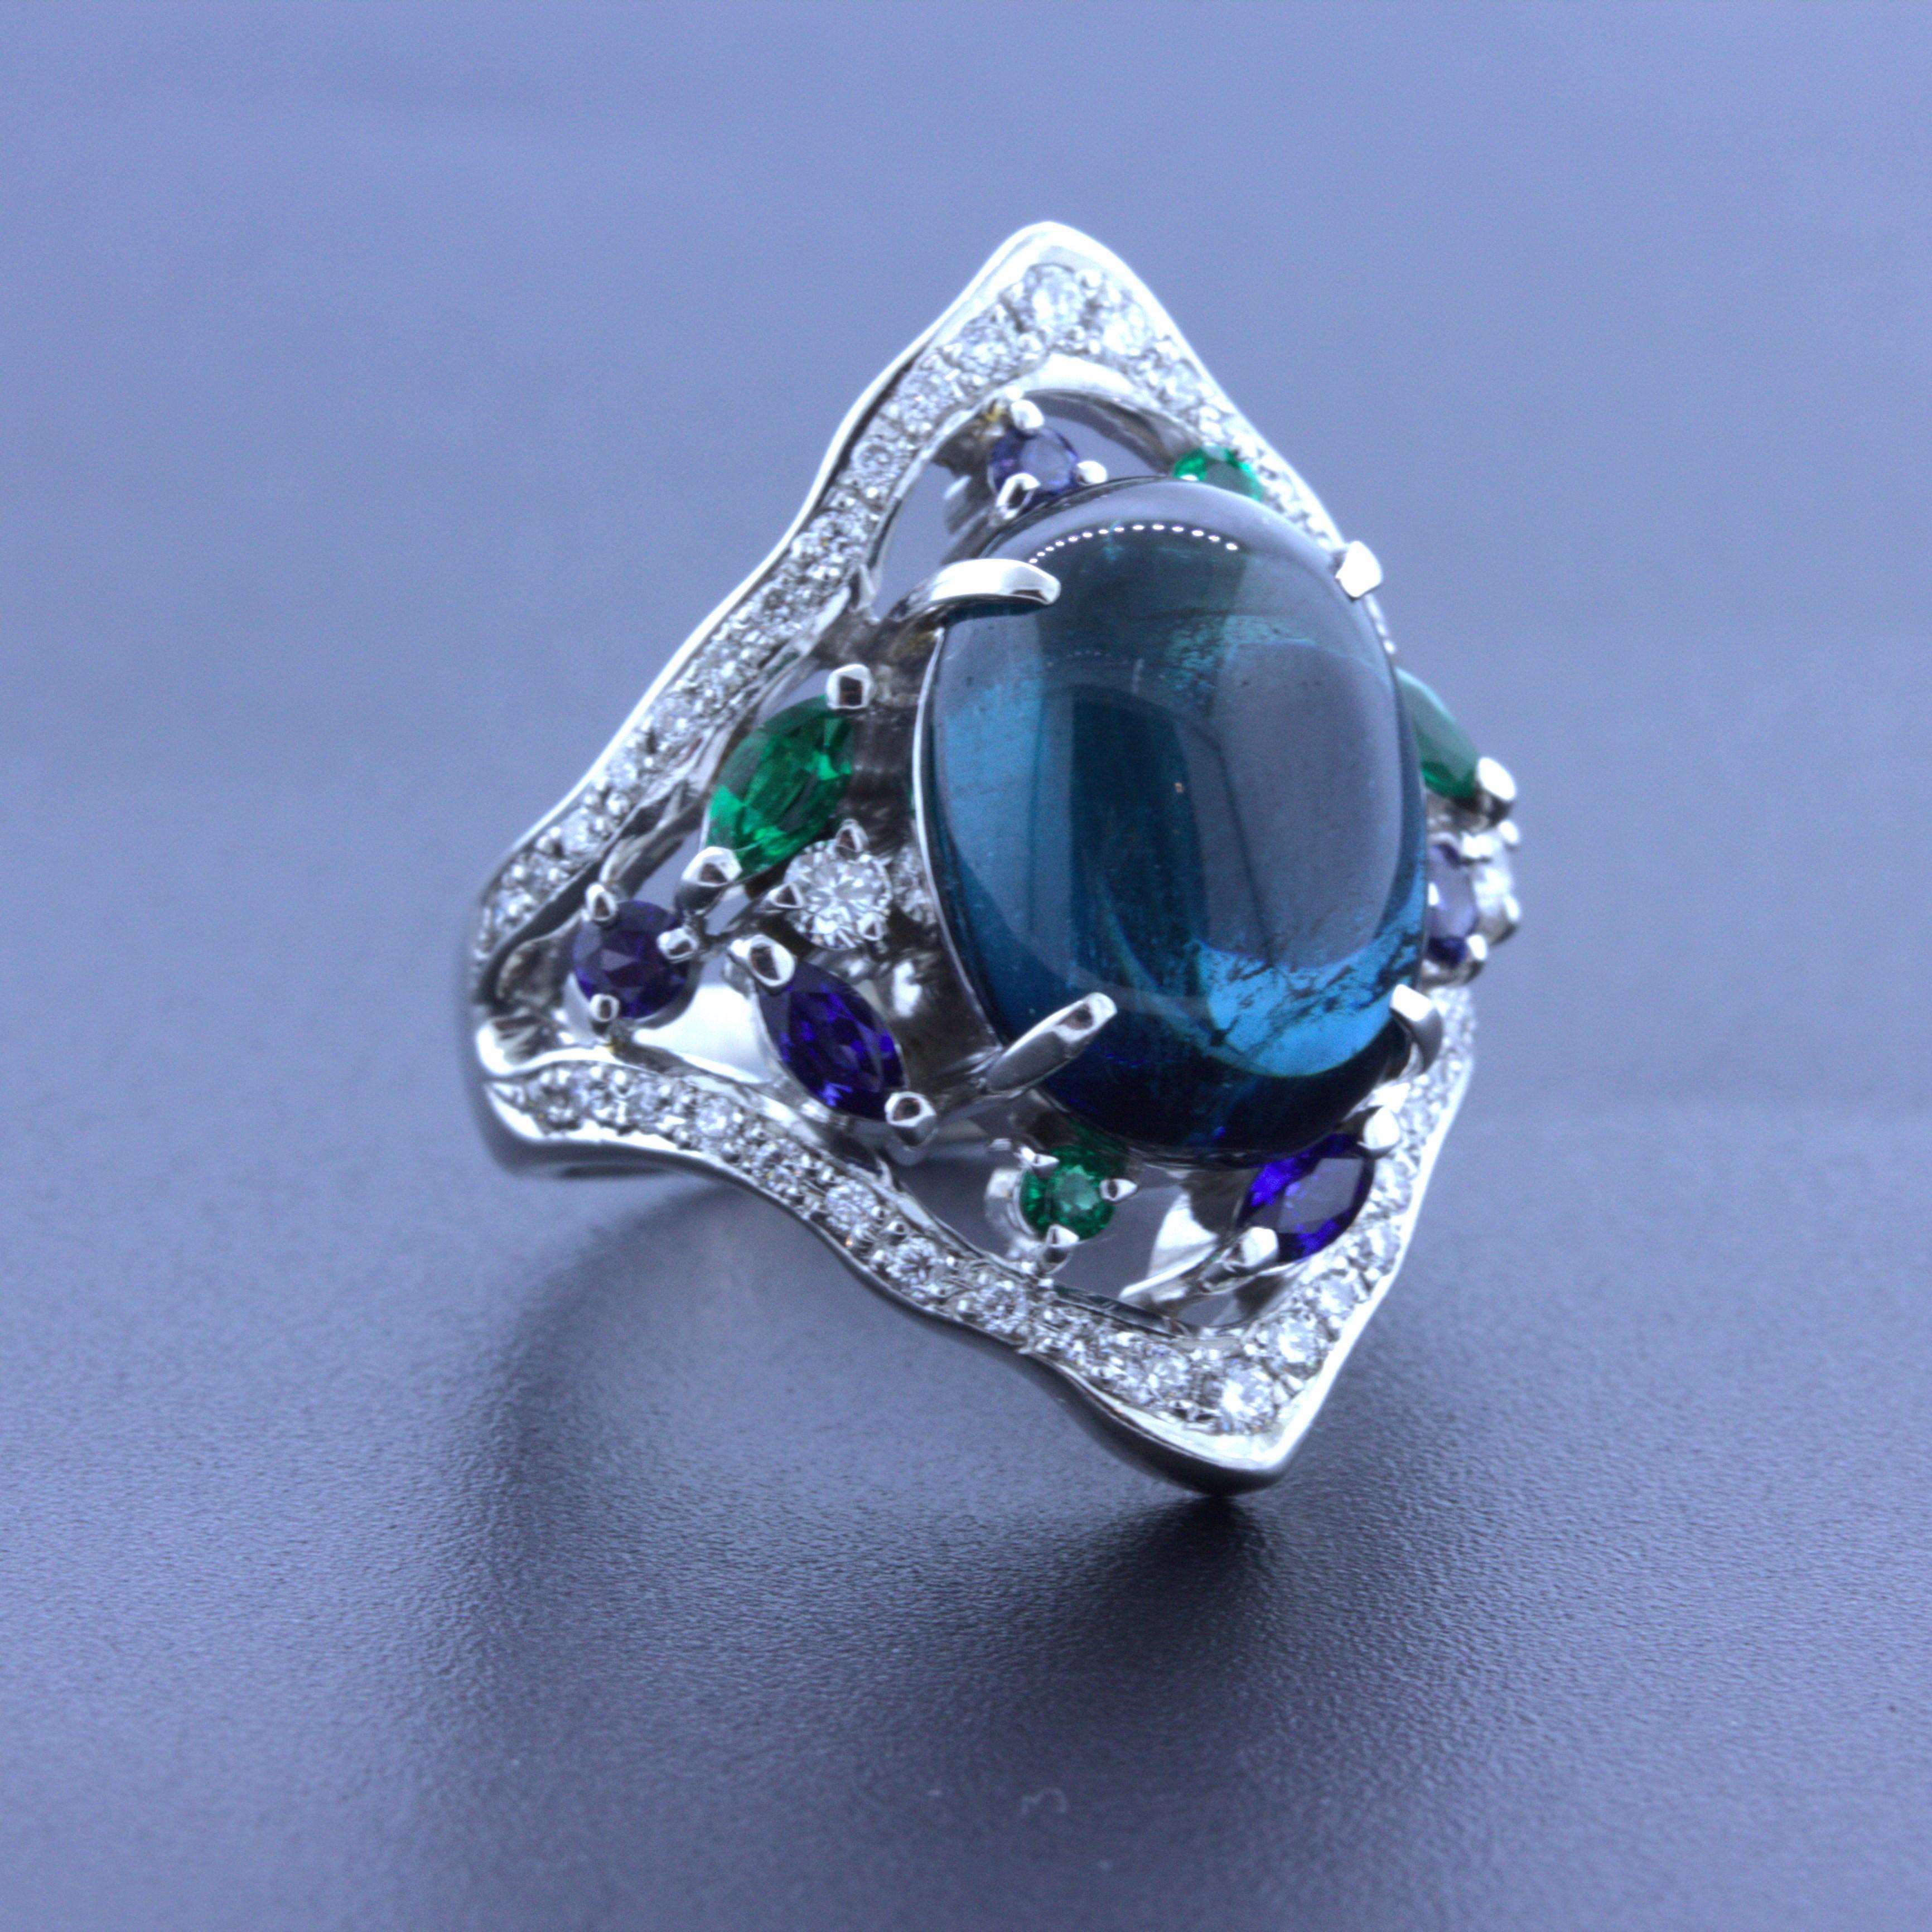 Ein eleganter Platinring mit einem 7,32 Karat schweren Indigolith-Turmalin. Er hat die ideale satte, leicht grünlich-blaue Farbe, die diesen Edelstein so beliebt macht. Er wird ergänzt durch runde und marquiseförmige Smaragde und Saphire, die um den